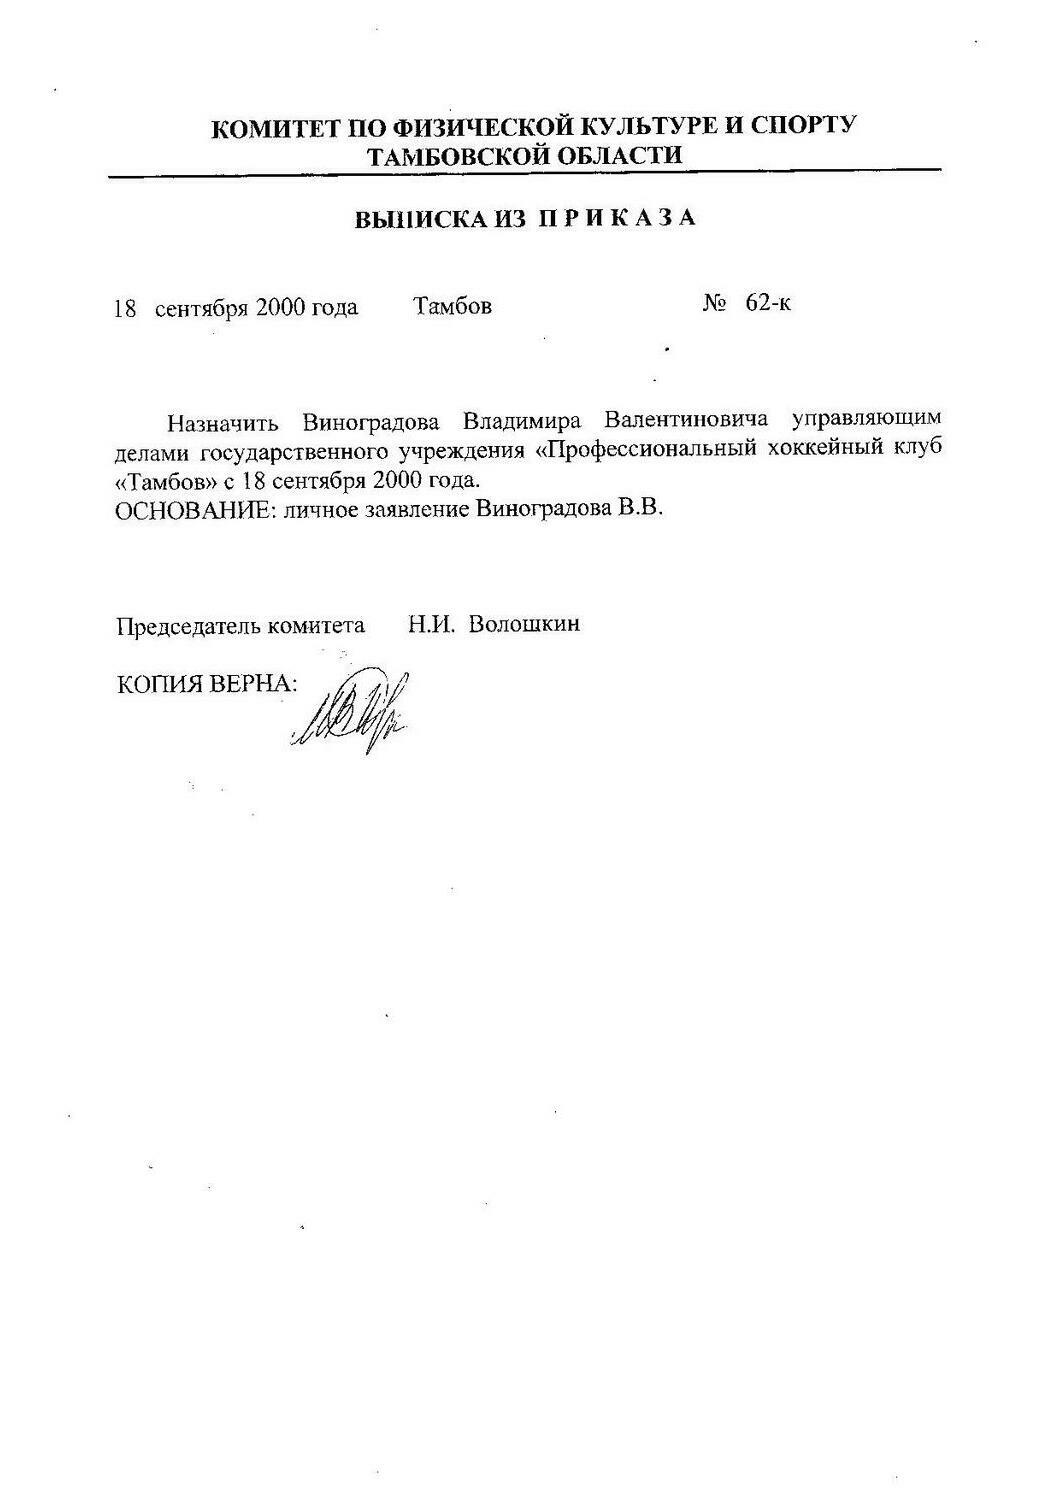 Выписка из приказа Управляющий ПХК Тамбов